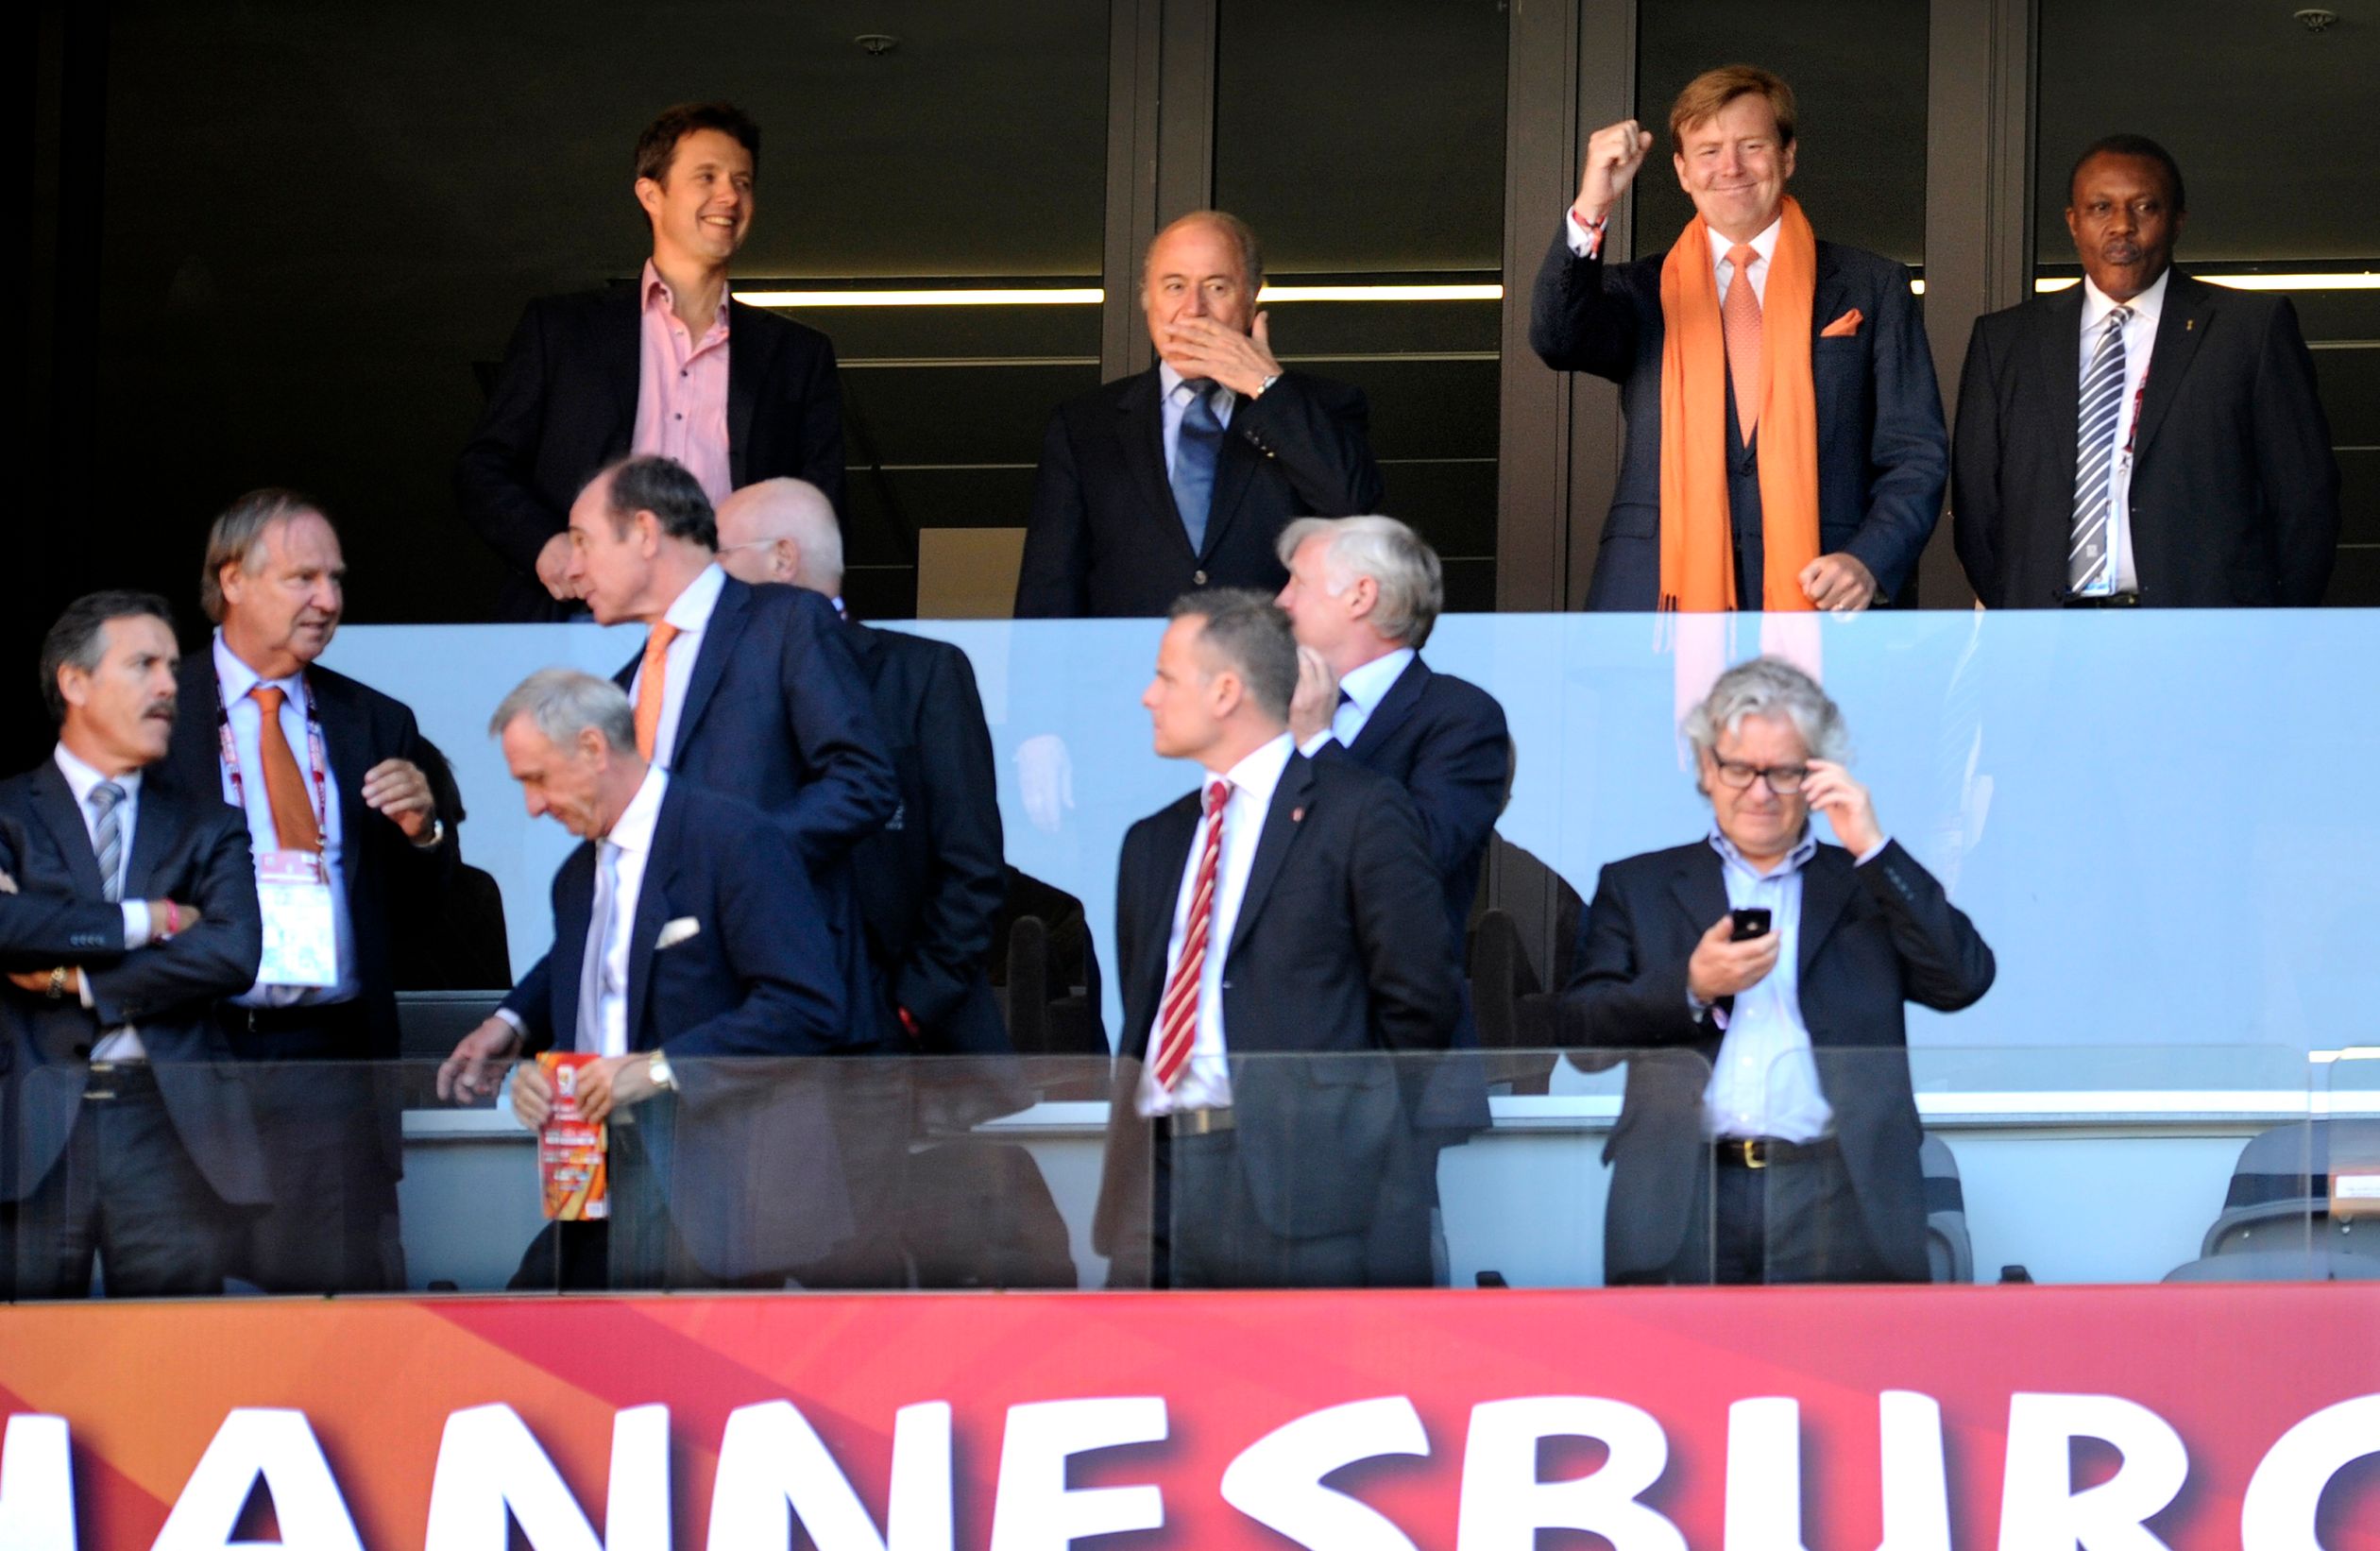 2010 - Prins Willem Alexander en kroonprins Frederik op  de tribune in het Soccer City stadion.